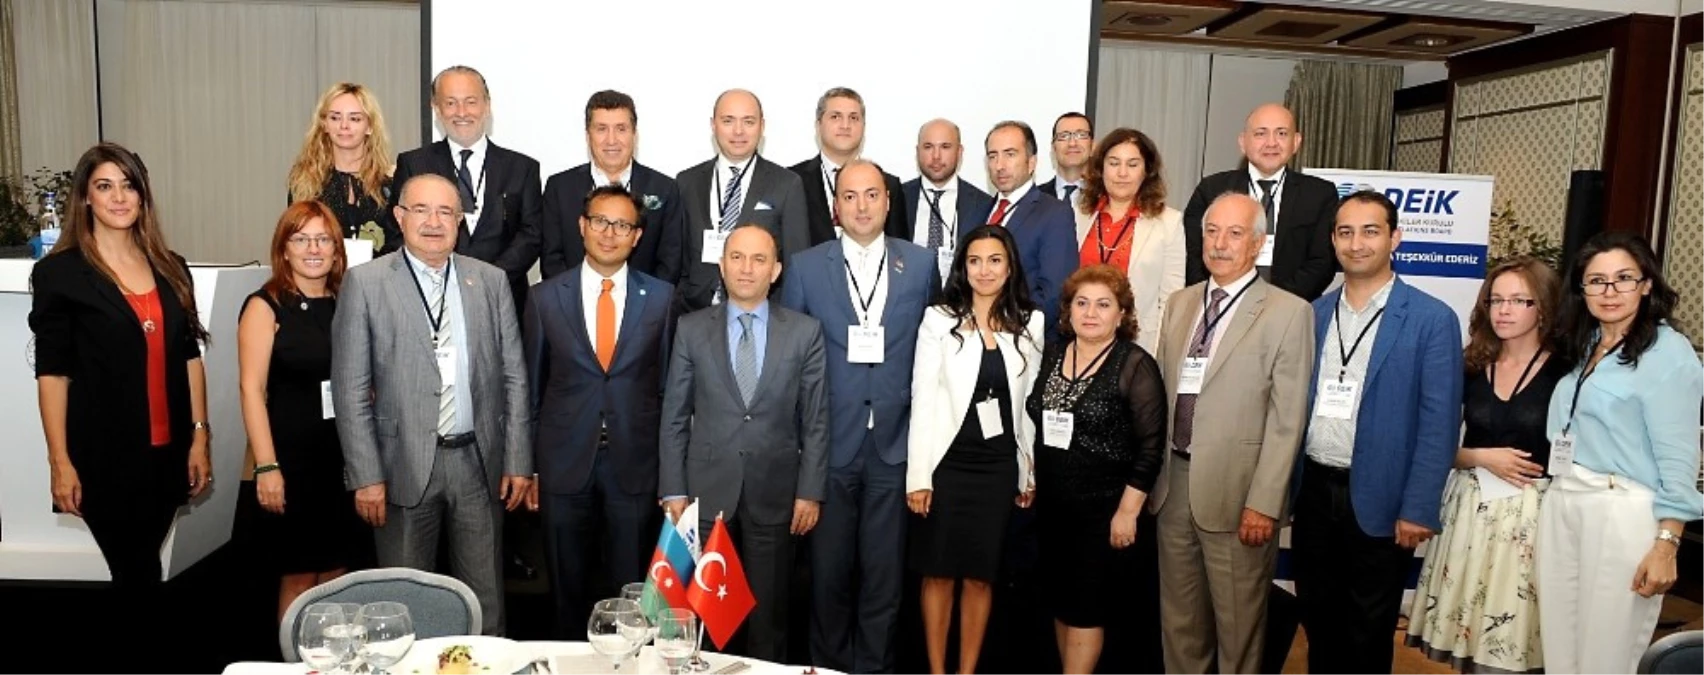 Türk ve Azerbaycanlı İşadamları Deik Yemeğinde Buluştu